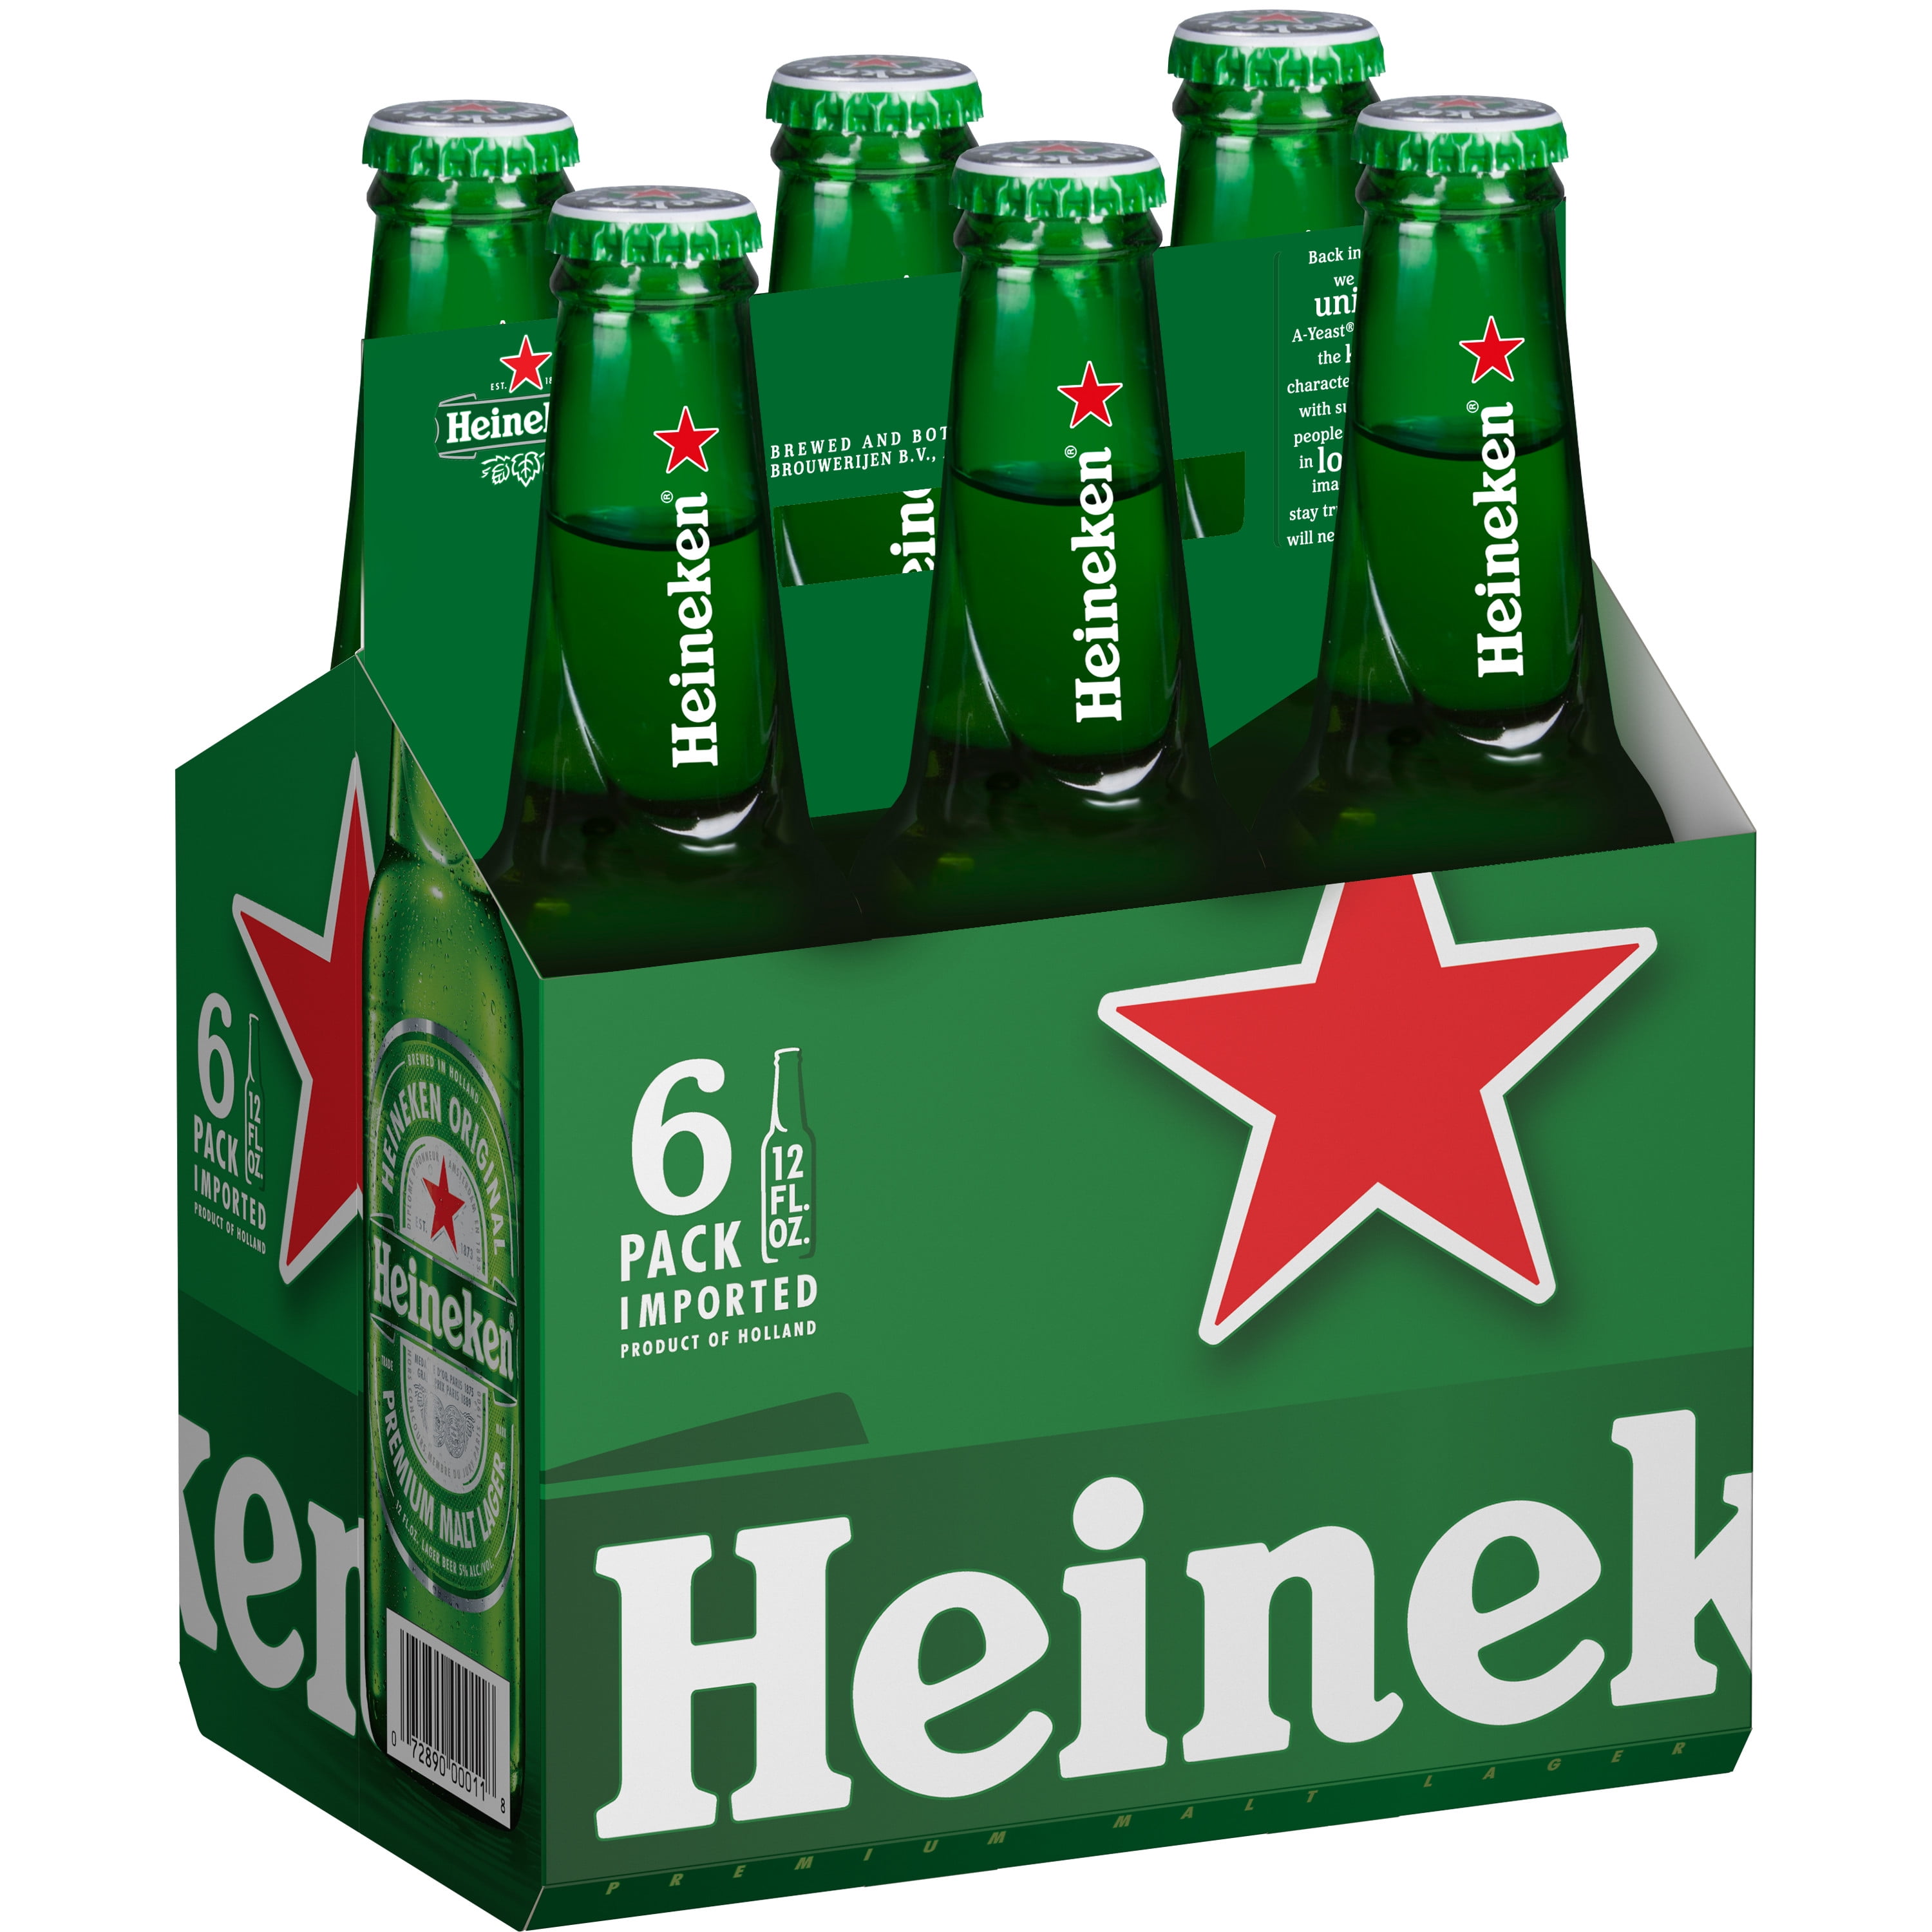 Verwaltung Komprimieren abbrechen how much is a case of heineken beer ...